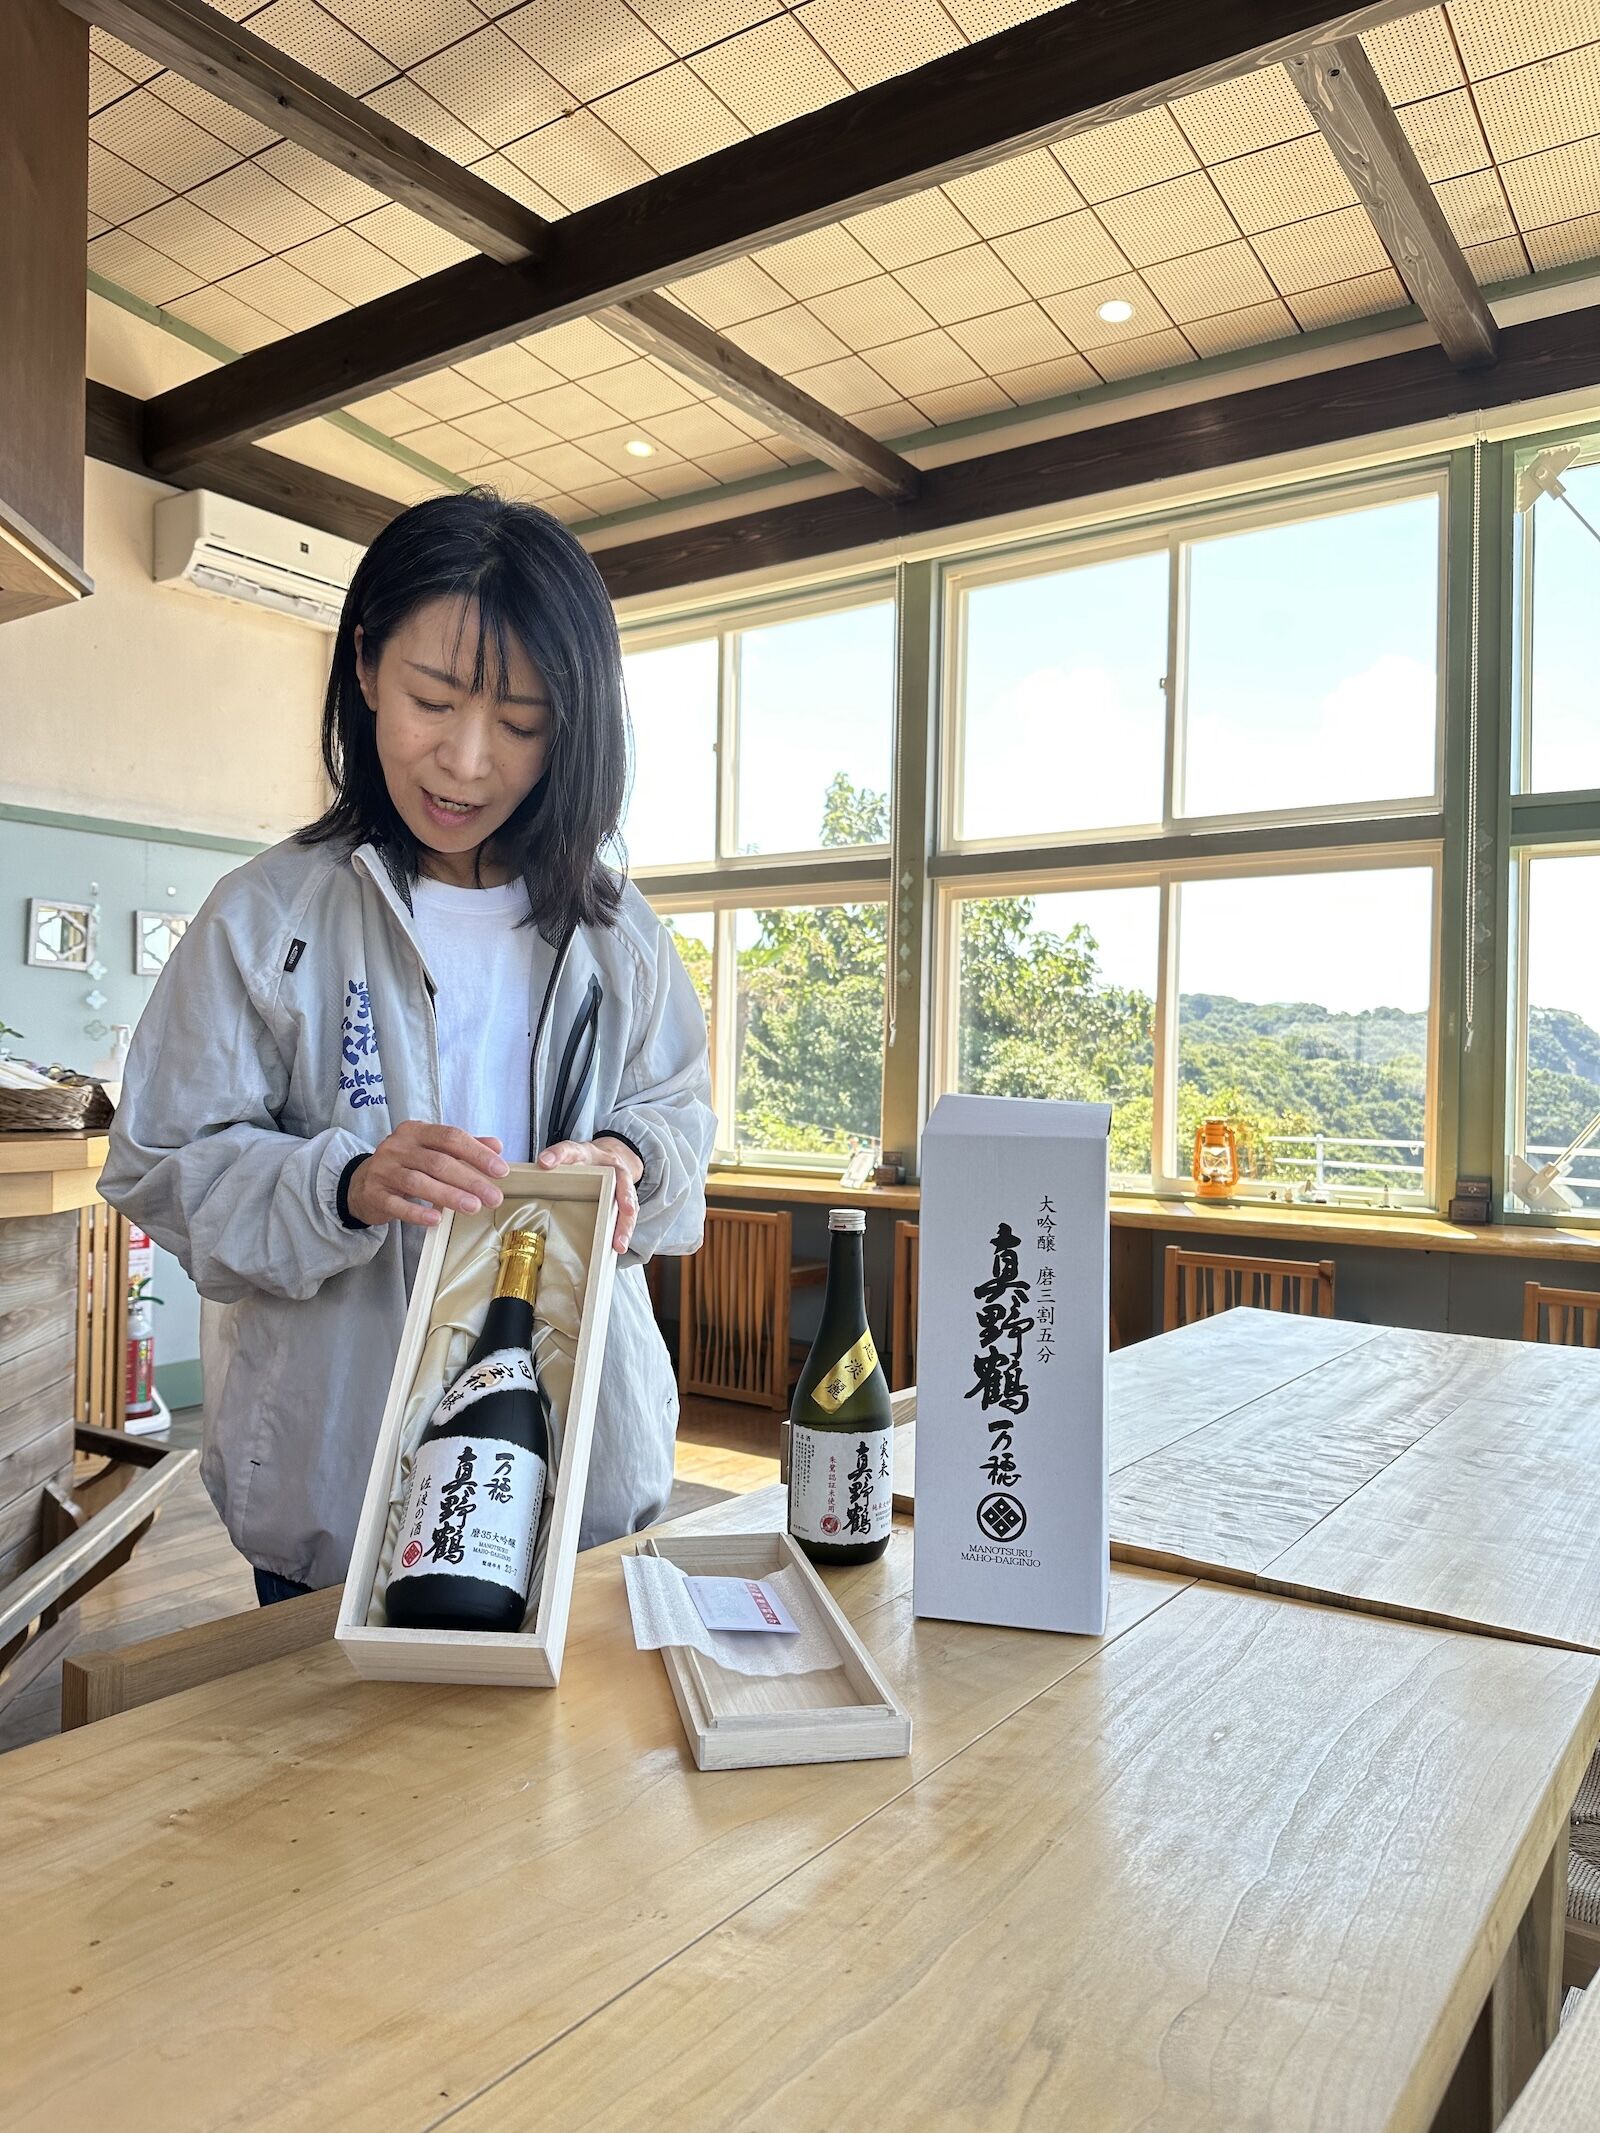 obata brewery sado japan sake